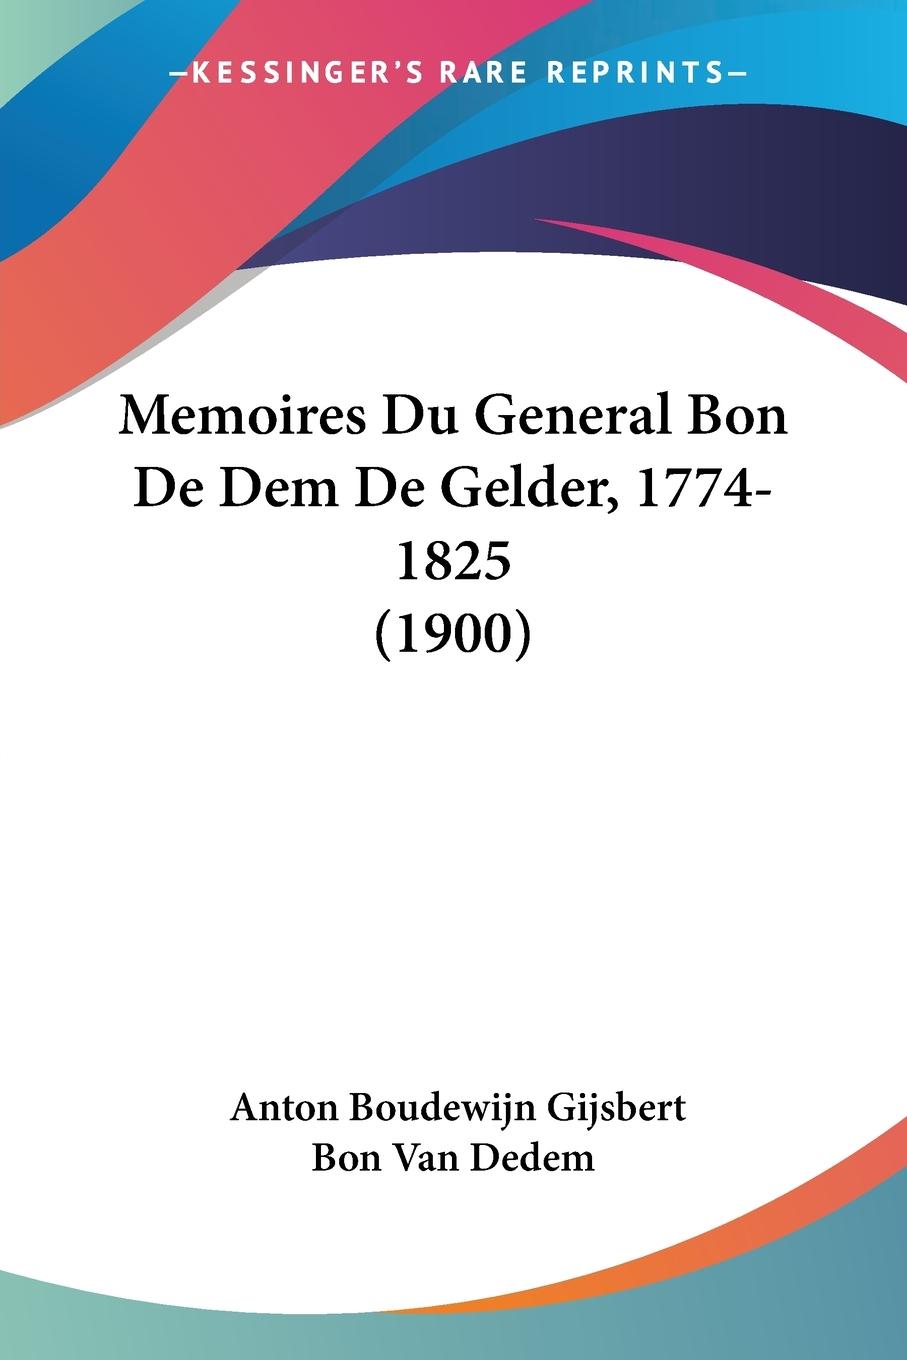 Memoires Du General Bon De Dem De Gelder, 1774-1825 (1900) - Dedem, Anton Boudewijn Gijsbert Bon van